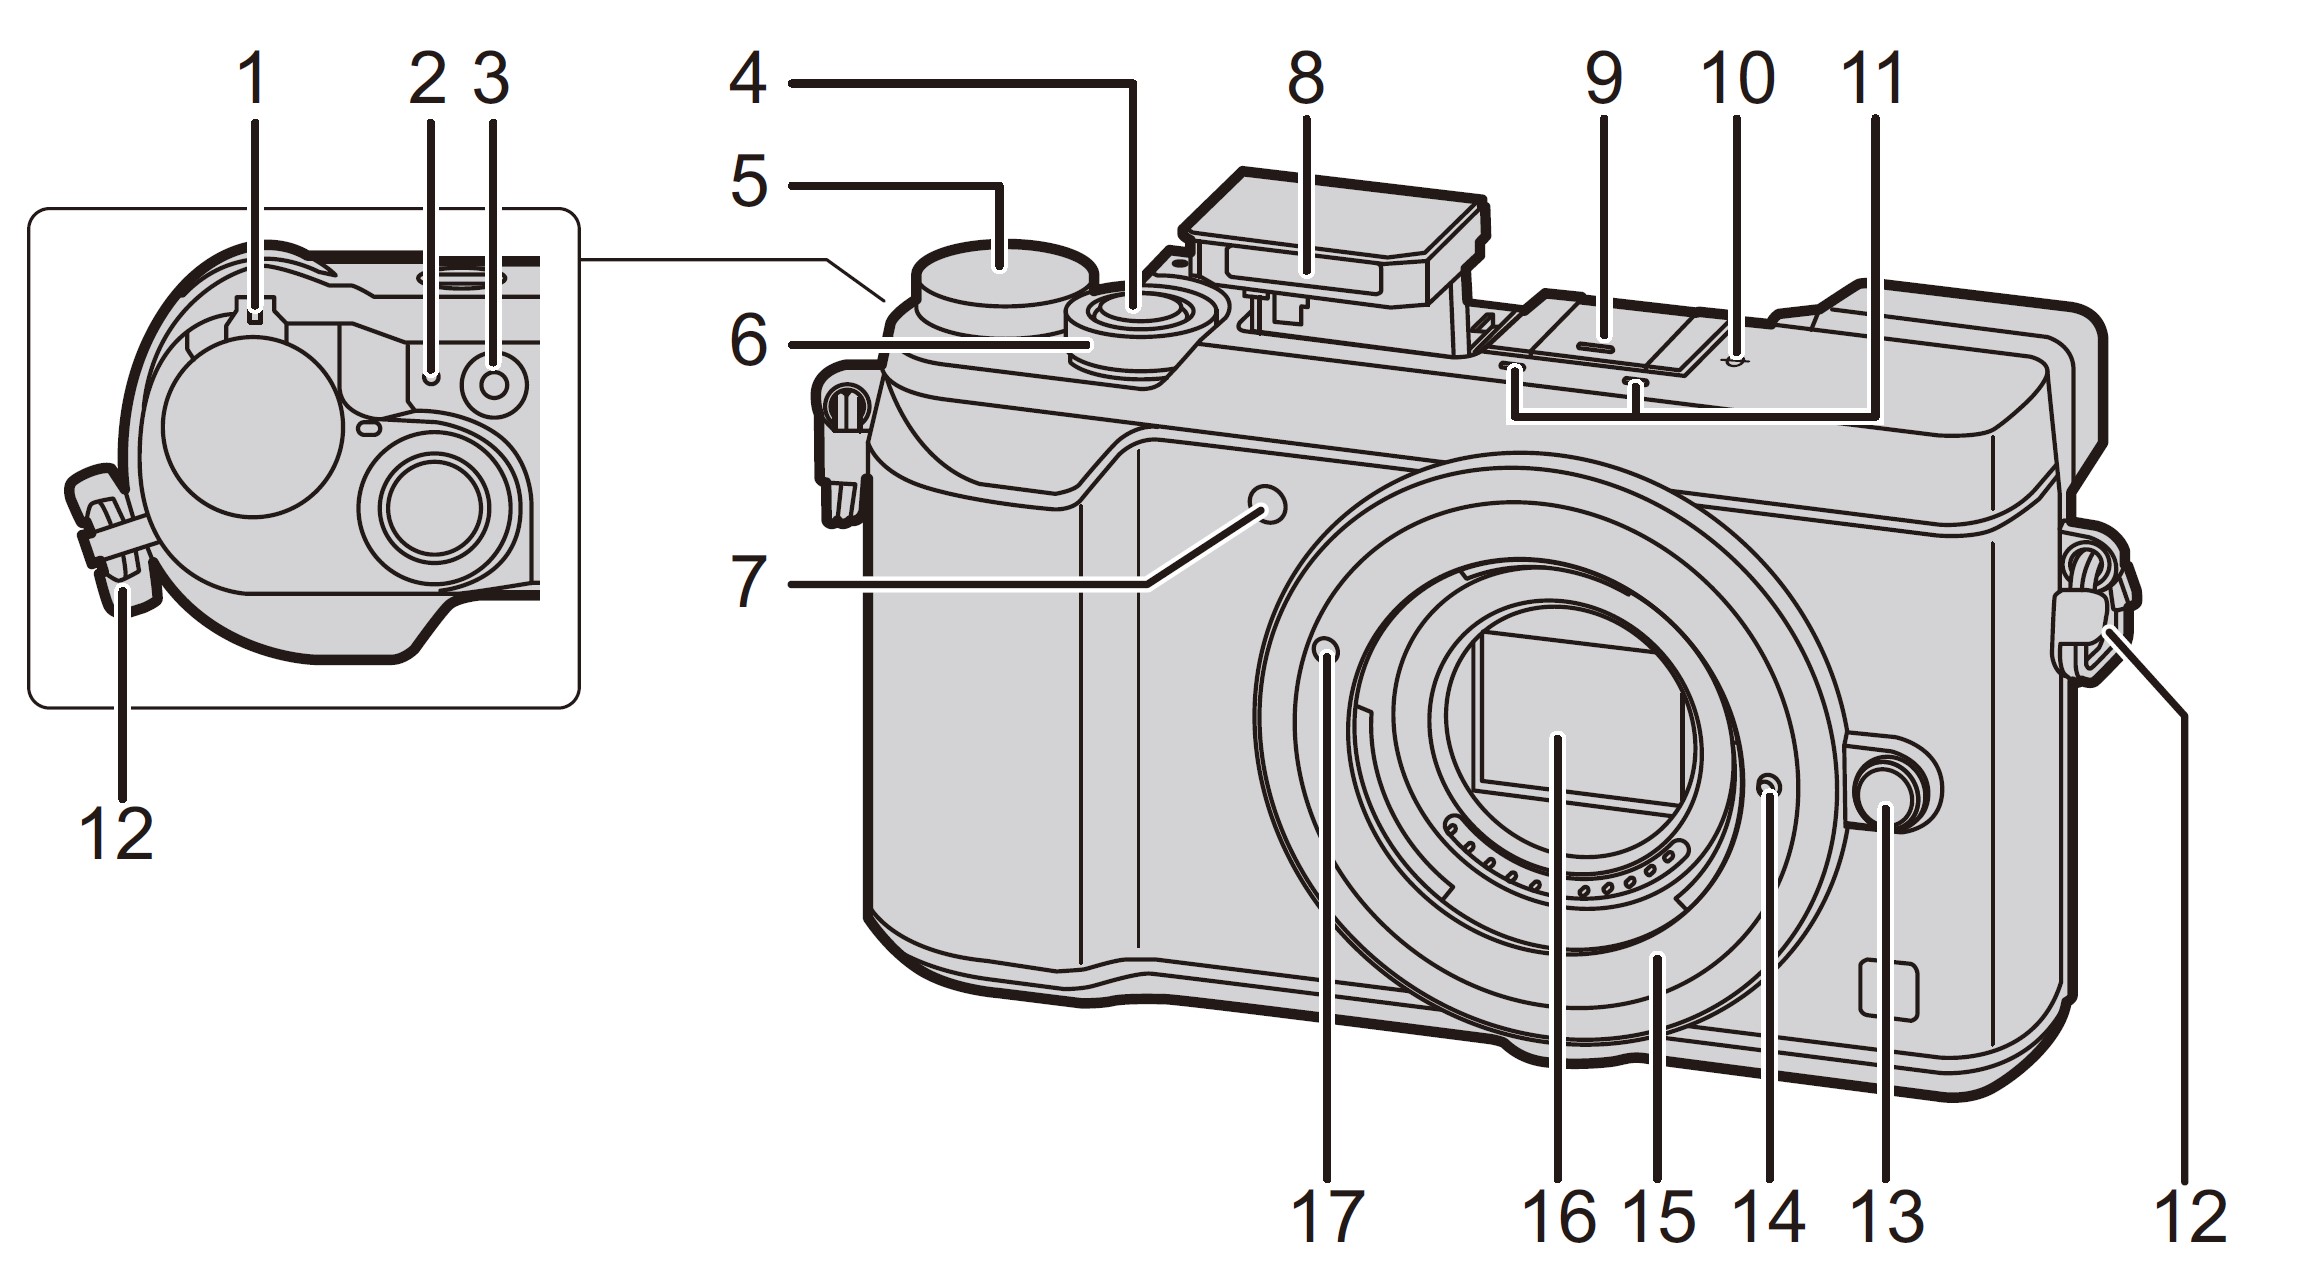 Panasonic-LUMIX-GX85-4K-Digital-Camera-Owner-Manual-23